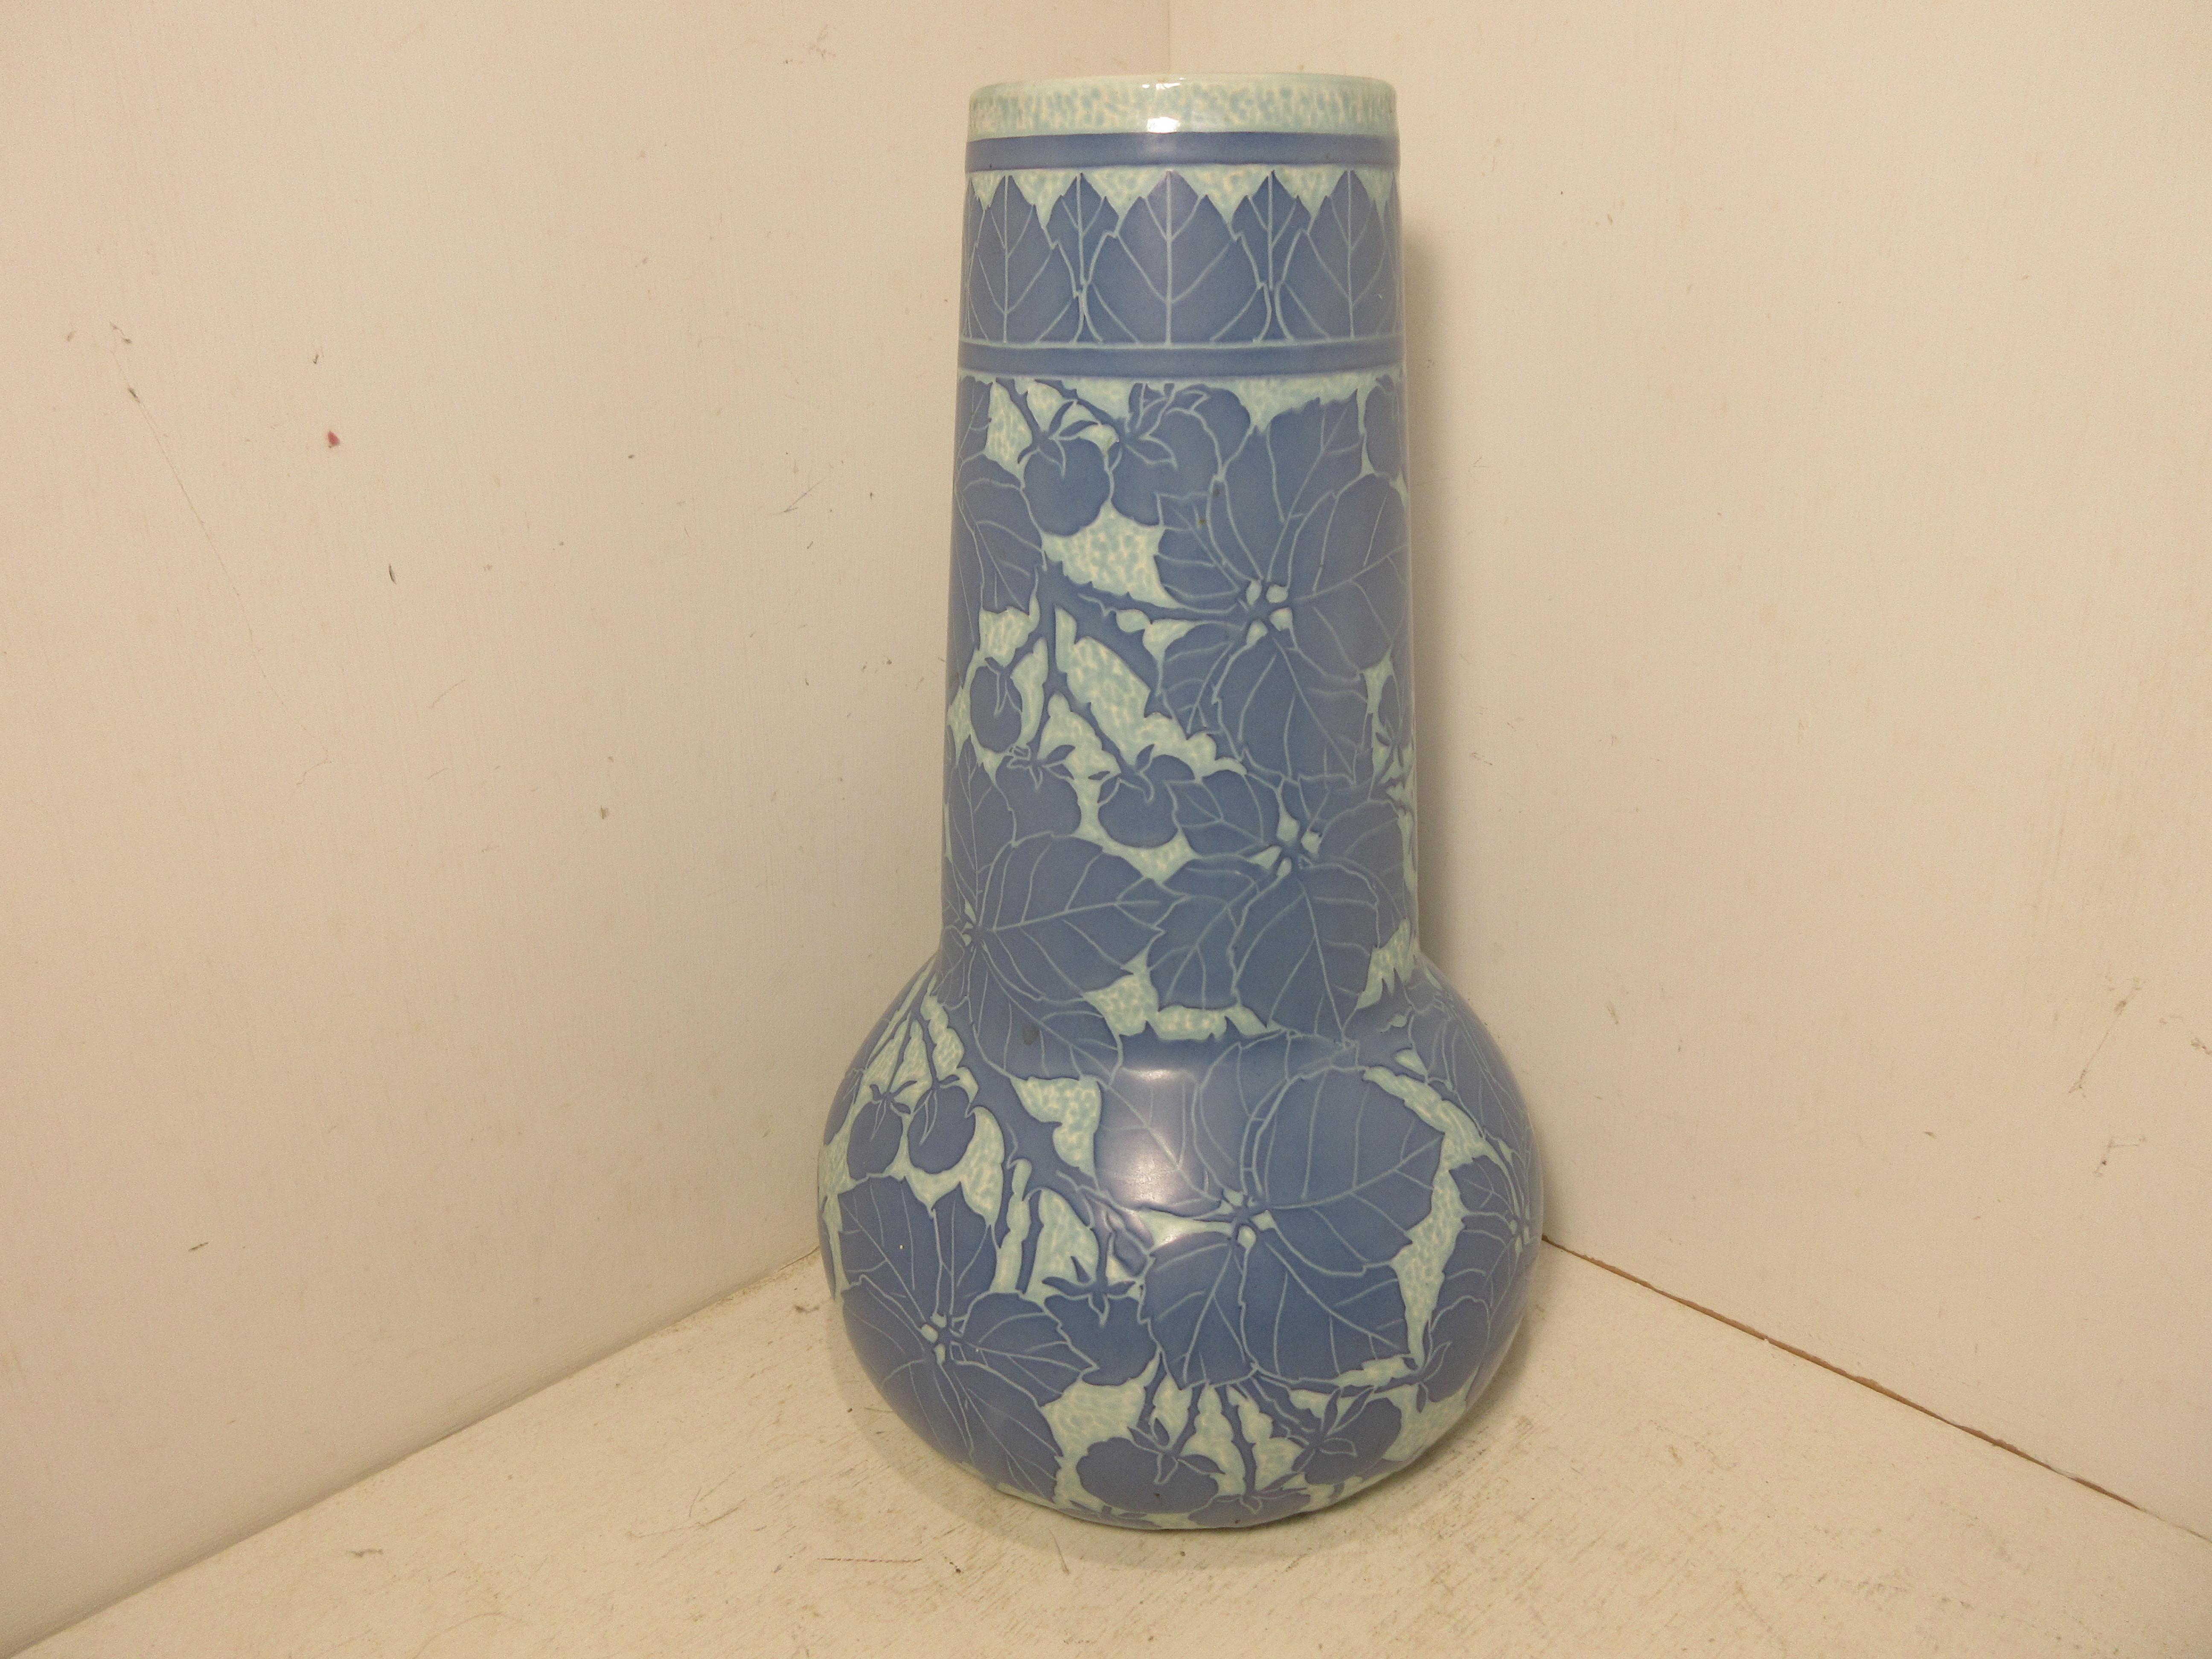 Dies ist eine handgefertigte, 1 off Sgraffito Vase von der schwedischen Keramik-Künstler Josef Ekberg im Jahr 1917 gemacht. er war einer der Top-Keramik-Künstler in Schweden zu der Zeit. Er arbeitete von 1898 bis zu seinem Tod im Jahr 1945 in der